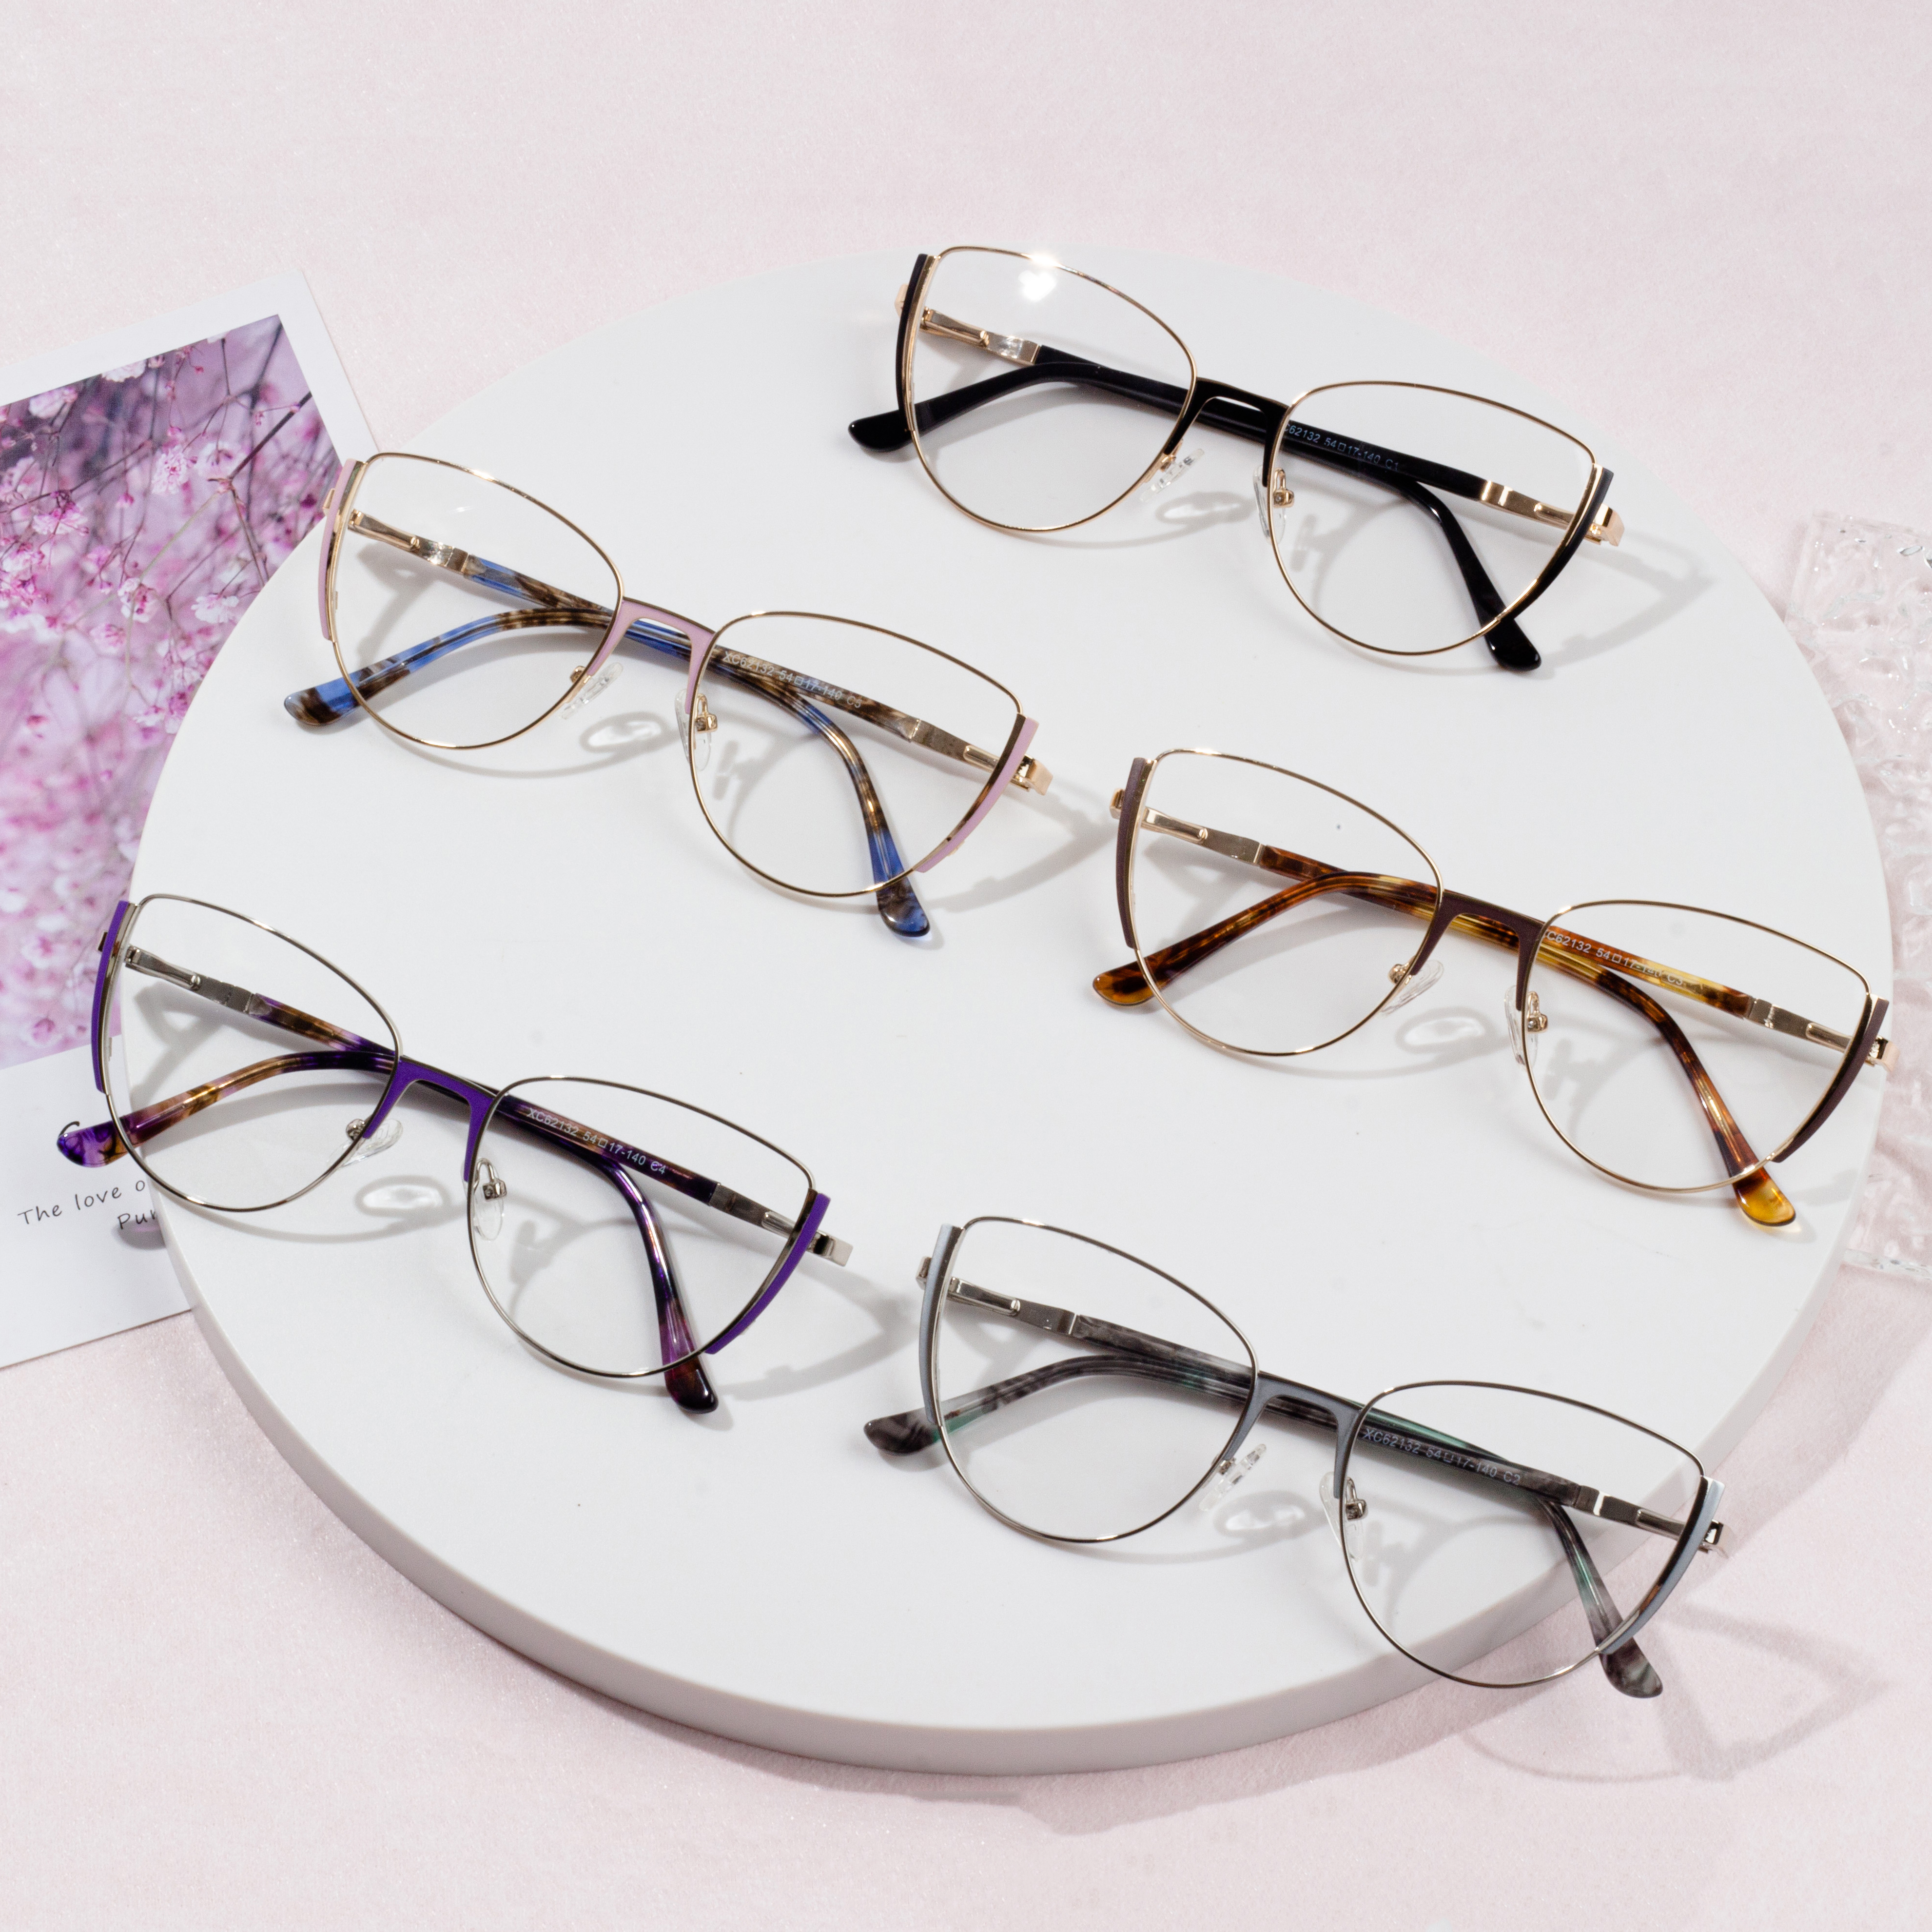 Optikai keretes szemüveg fém szemüveg